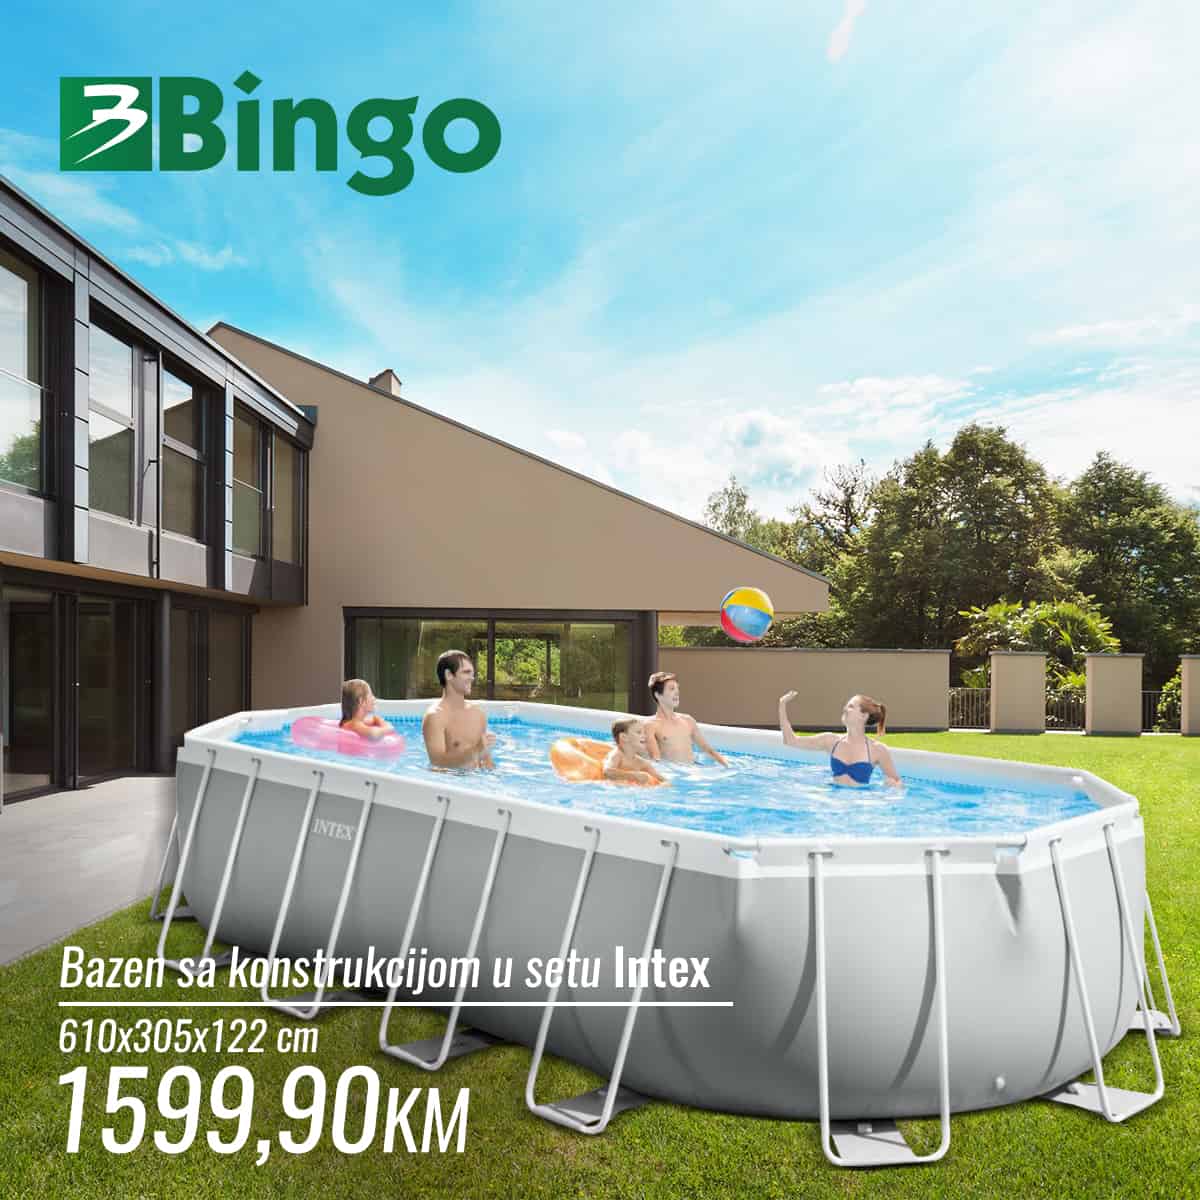 U Bingo prodavnicama pronaci cete sniženje bazena. Akcijska cijena bazena sa konstrukcijom 1599,90 KM